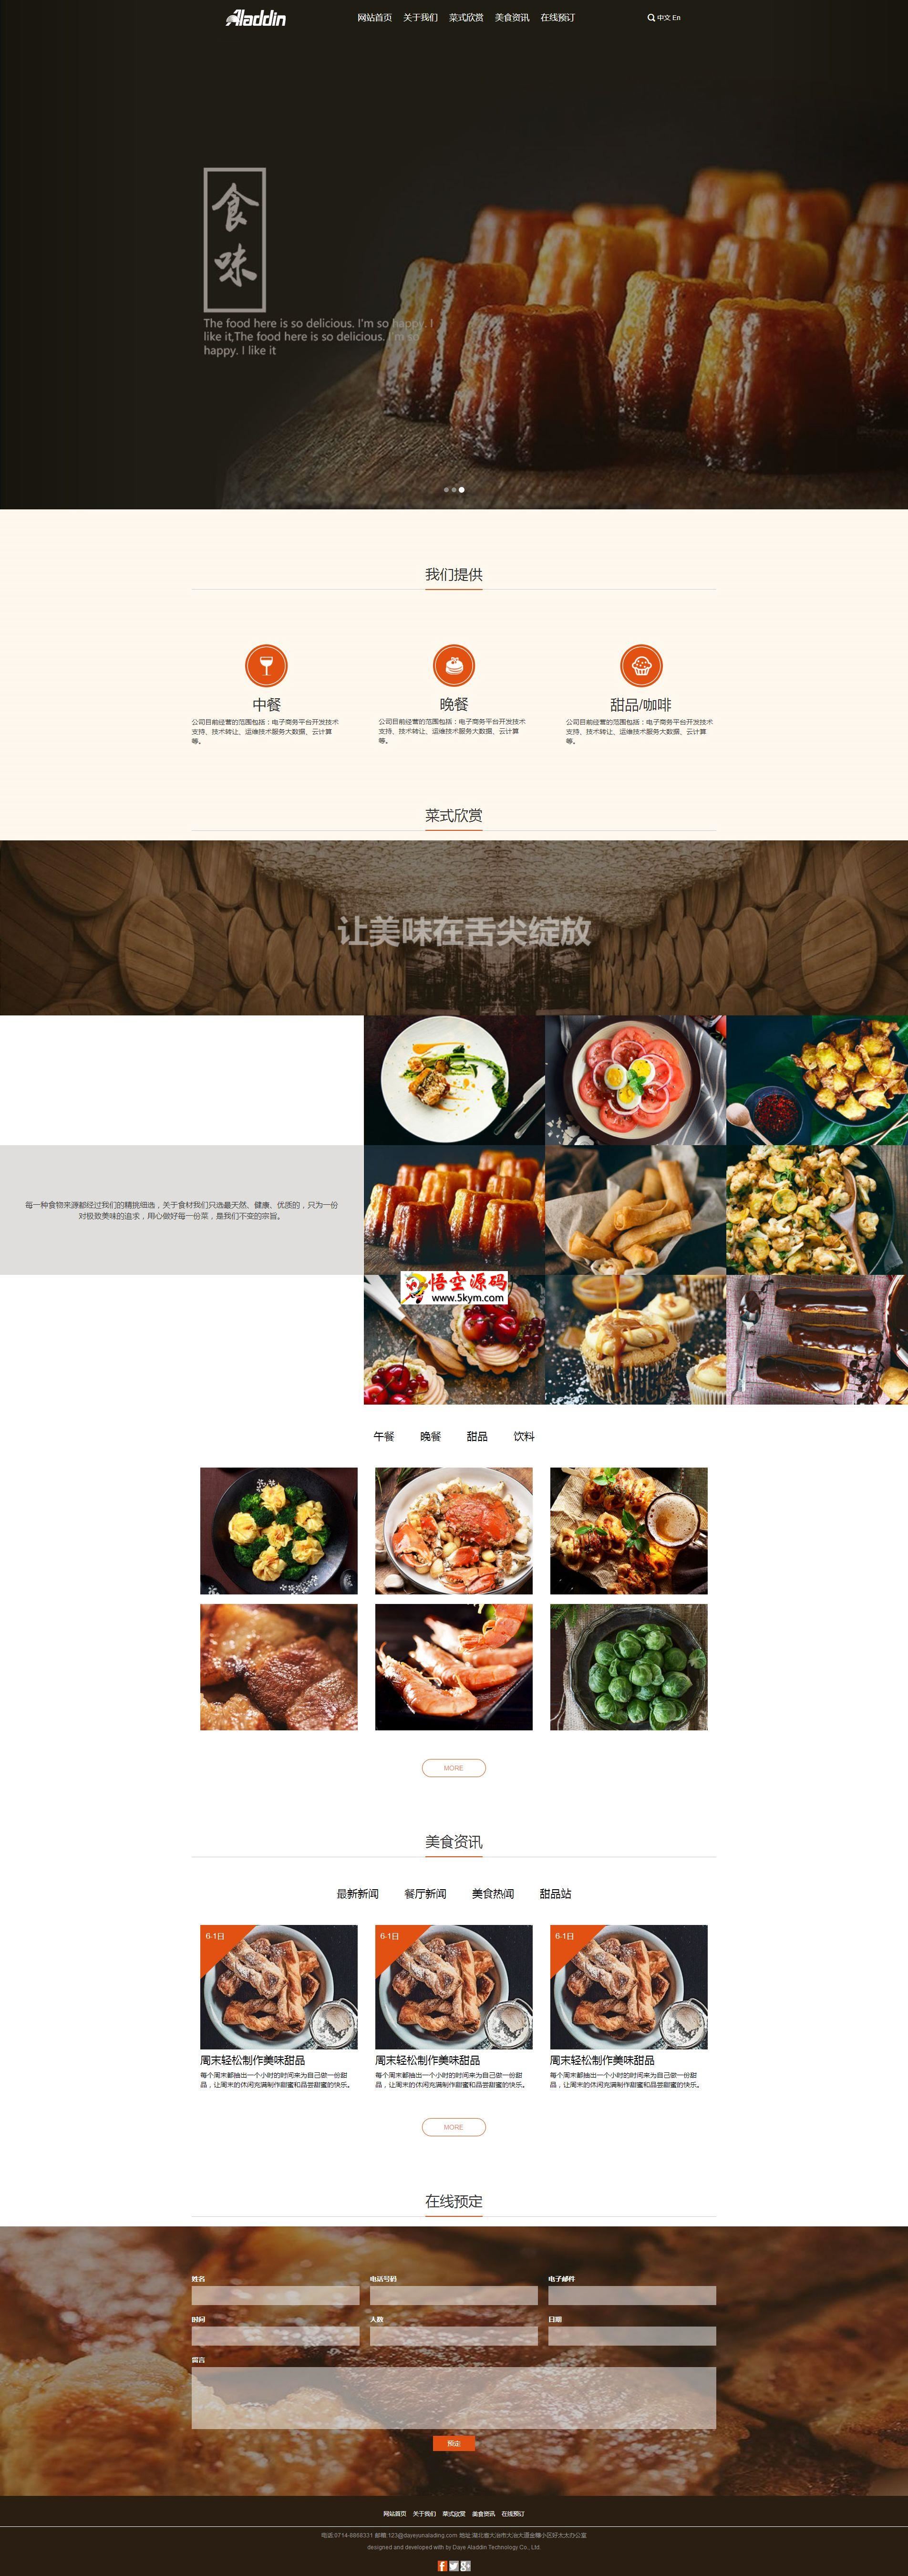 好主题原创美食餐饮订餐模板 v1.0